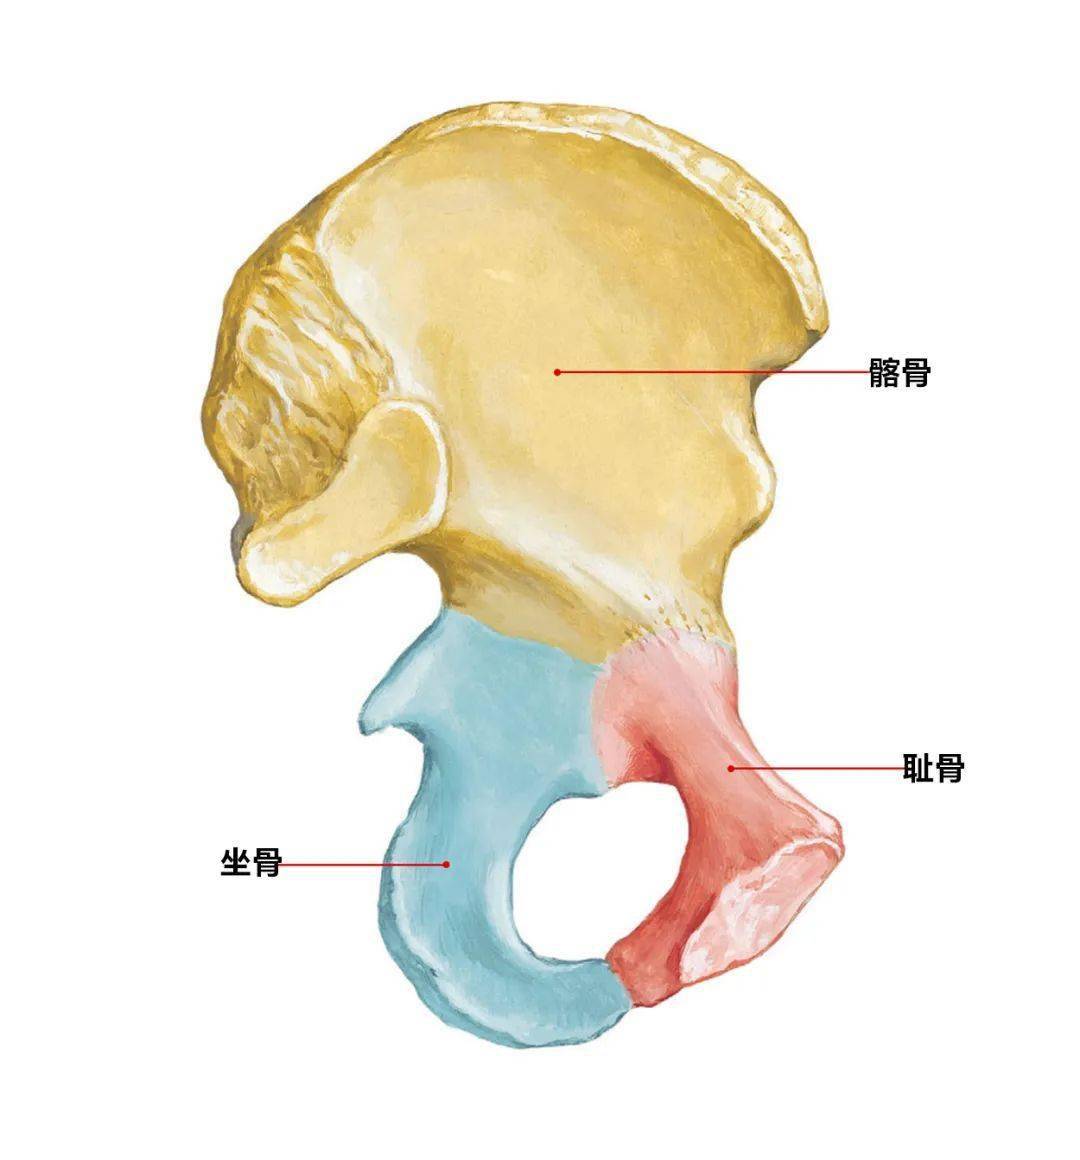 两侧髂嵴最高点的连线约平第4腰椎棘突,是计数椎骨的标志.